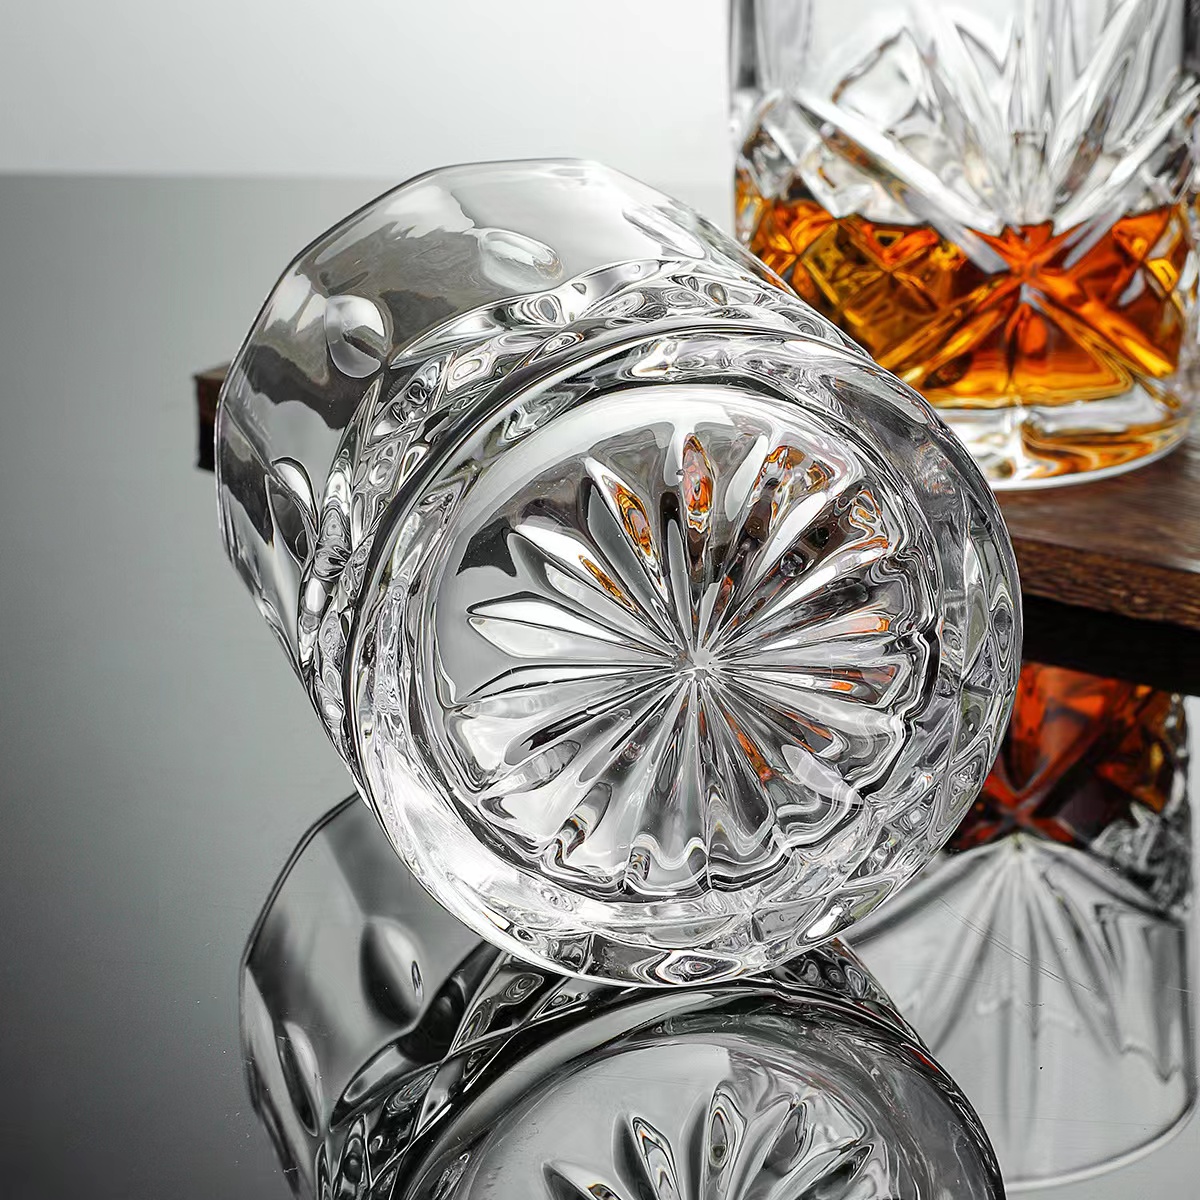 Vecmodīgas viskija glāzes Scotch, Bourbon, Liquor04 — 副本